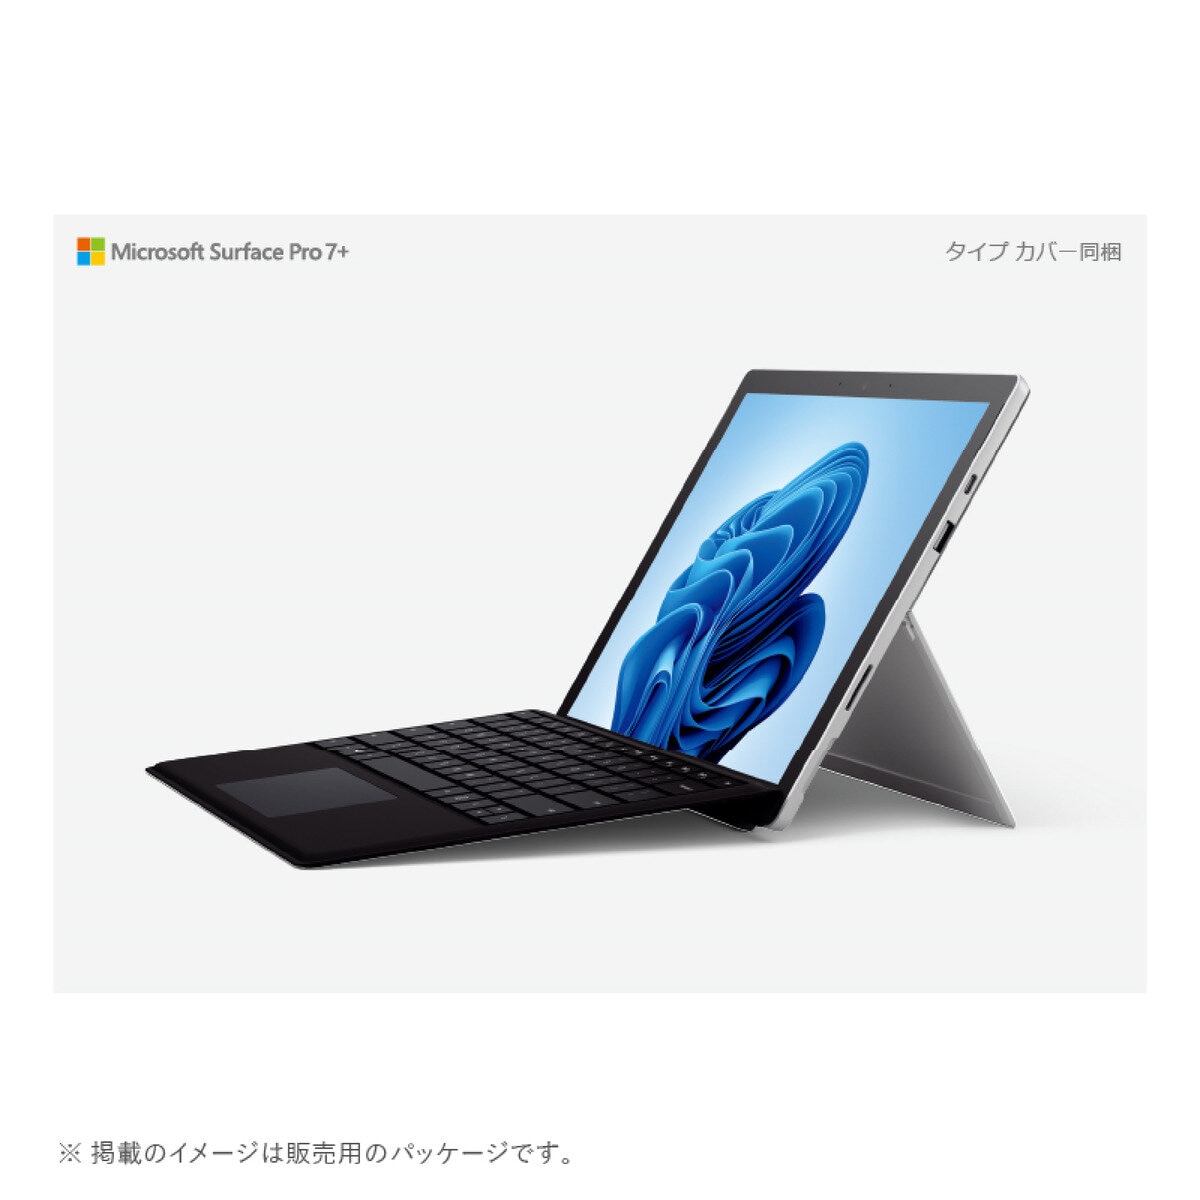 マイクロソフト Surface Pro7 | Costco Japan